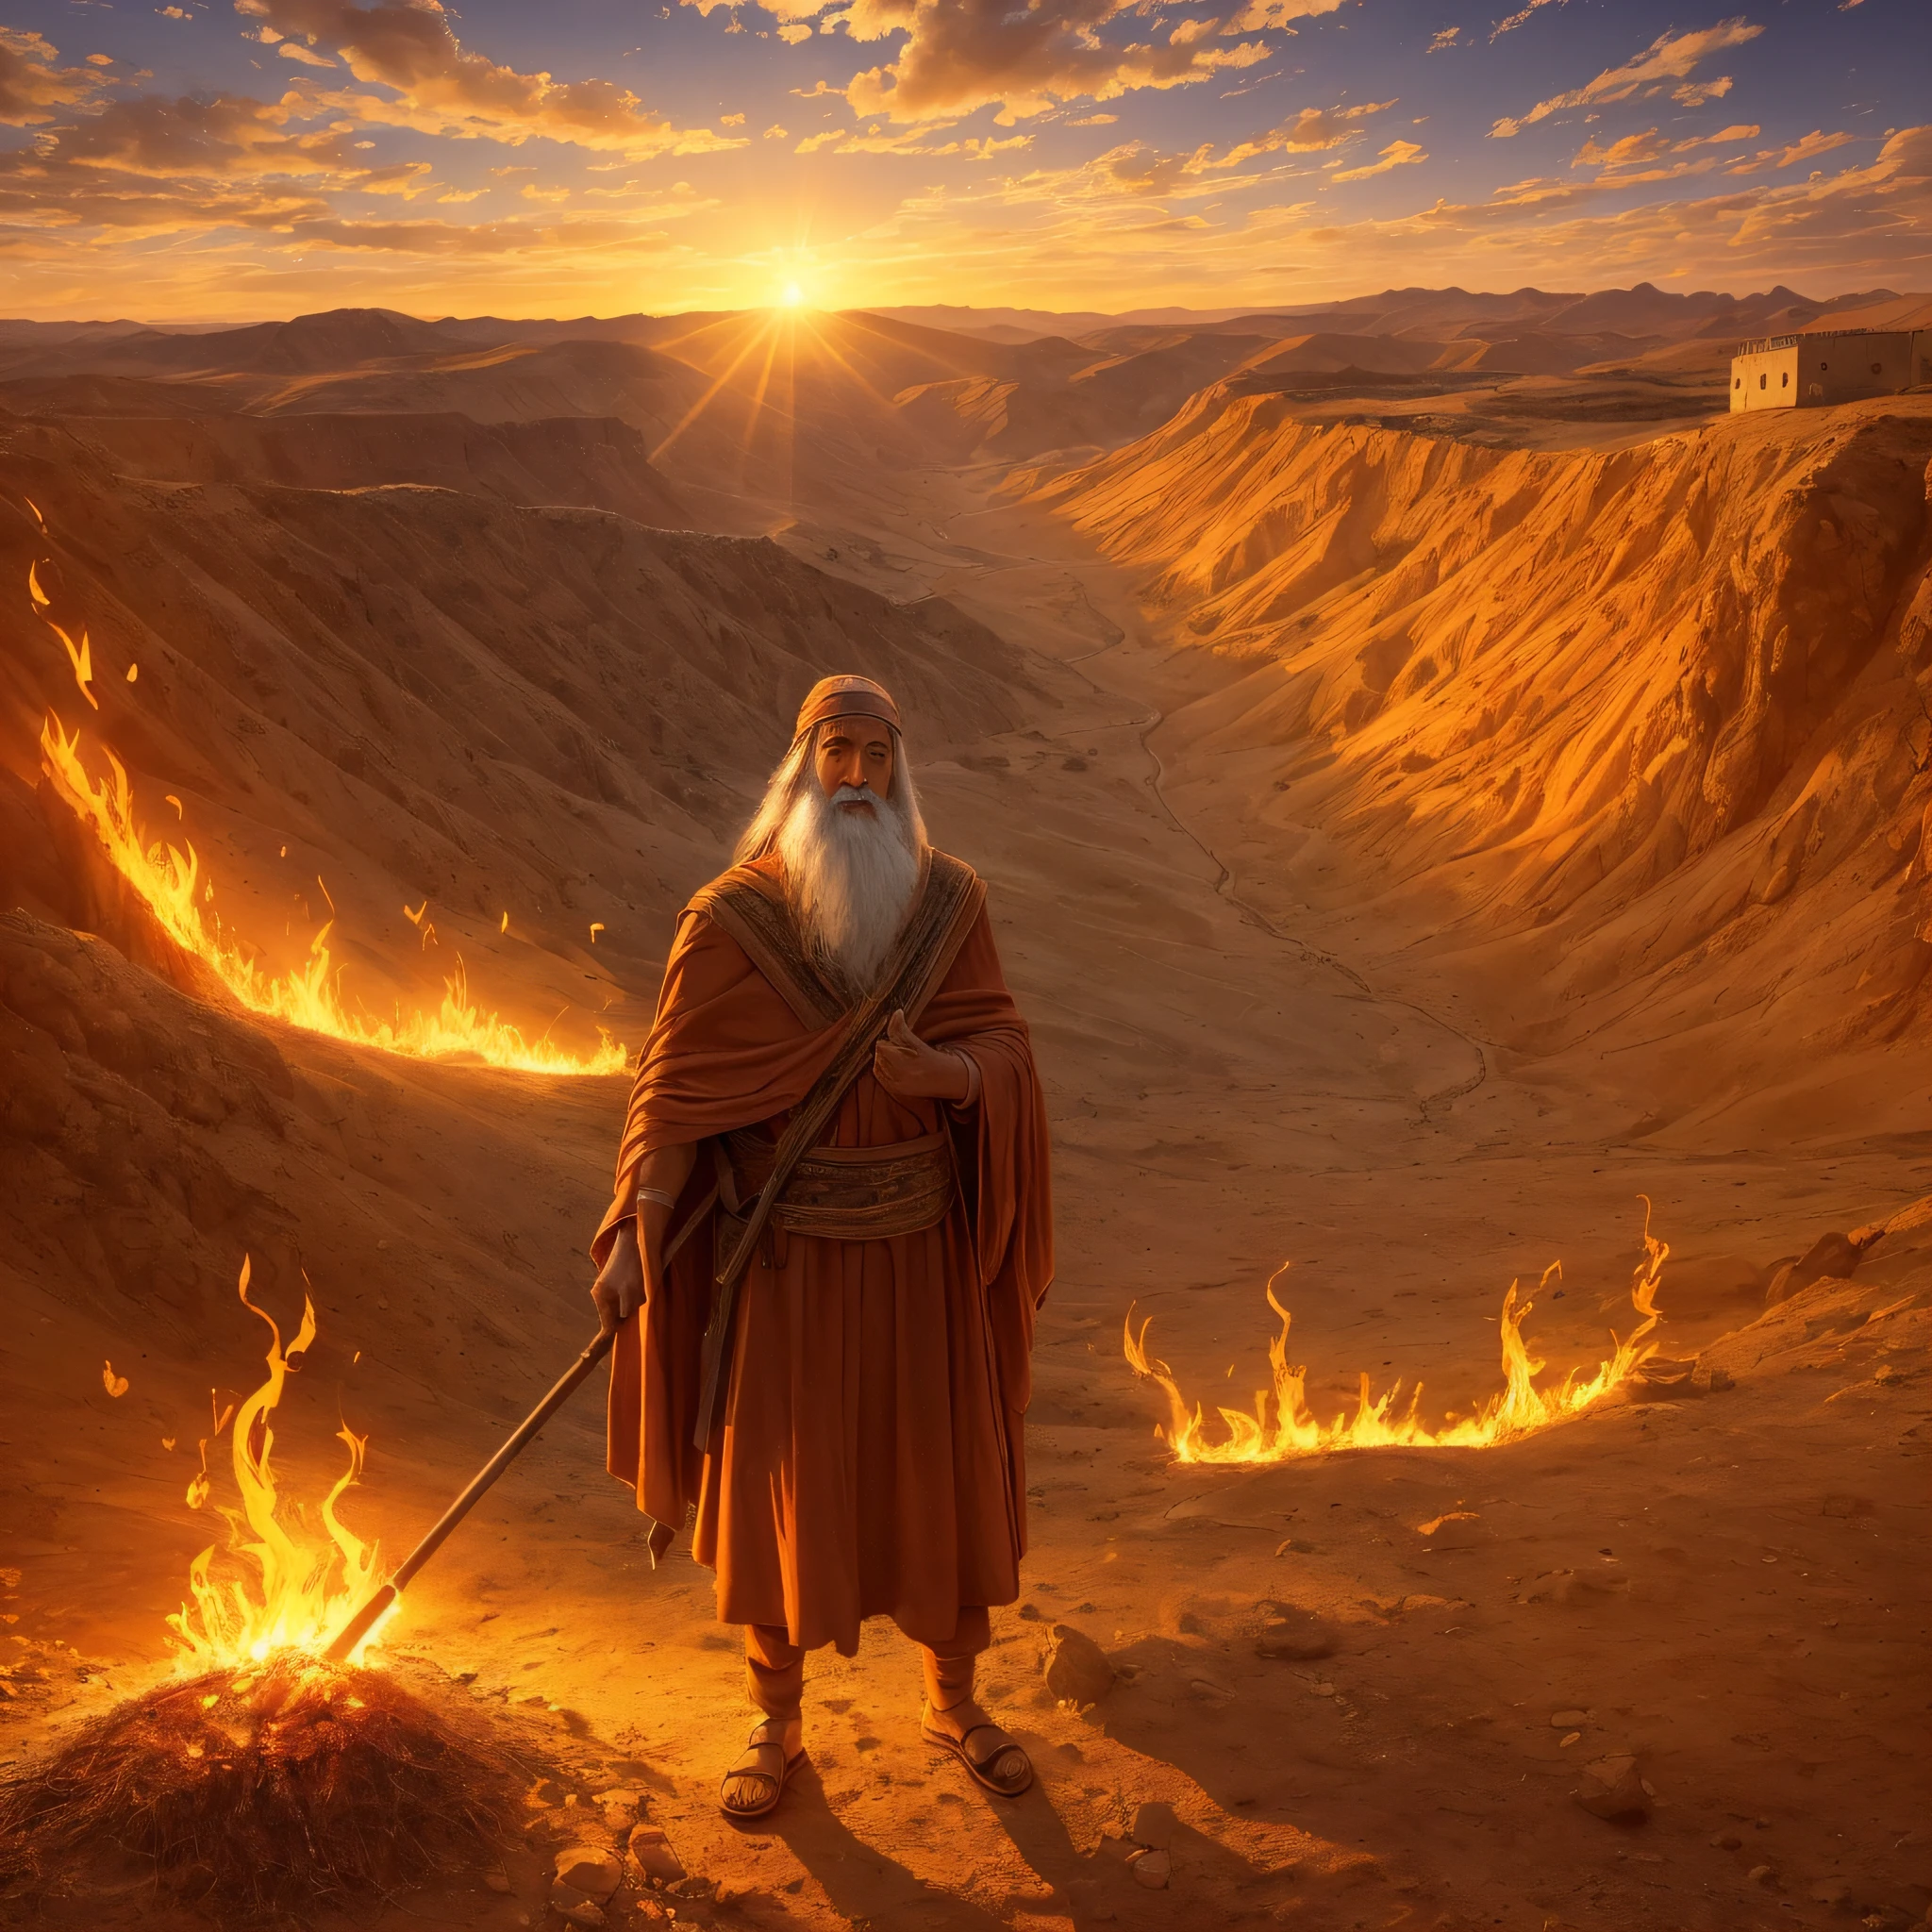 Moisés diante da sarça ardente no Monte Horebe. Moisés é um velho vestido de pastor. O arbusto está brilhante, chamas vibrantes, mas não é consumido pelo fogo. Moisés olha com espanto e admiração para a sarça. O ambiente circundante é montanhoso e desértico, com o sol se pondo e iluminando a cena com uma luz laranja. Esta imagem representa o momento em que Moisés é chamado por Deus para libertar o povo de Israel. --auto --s2